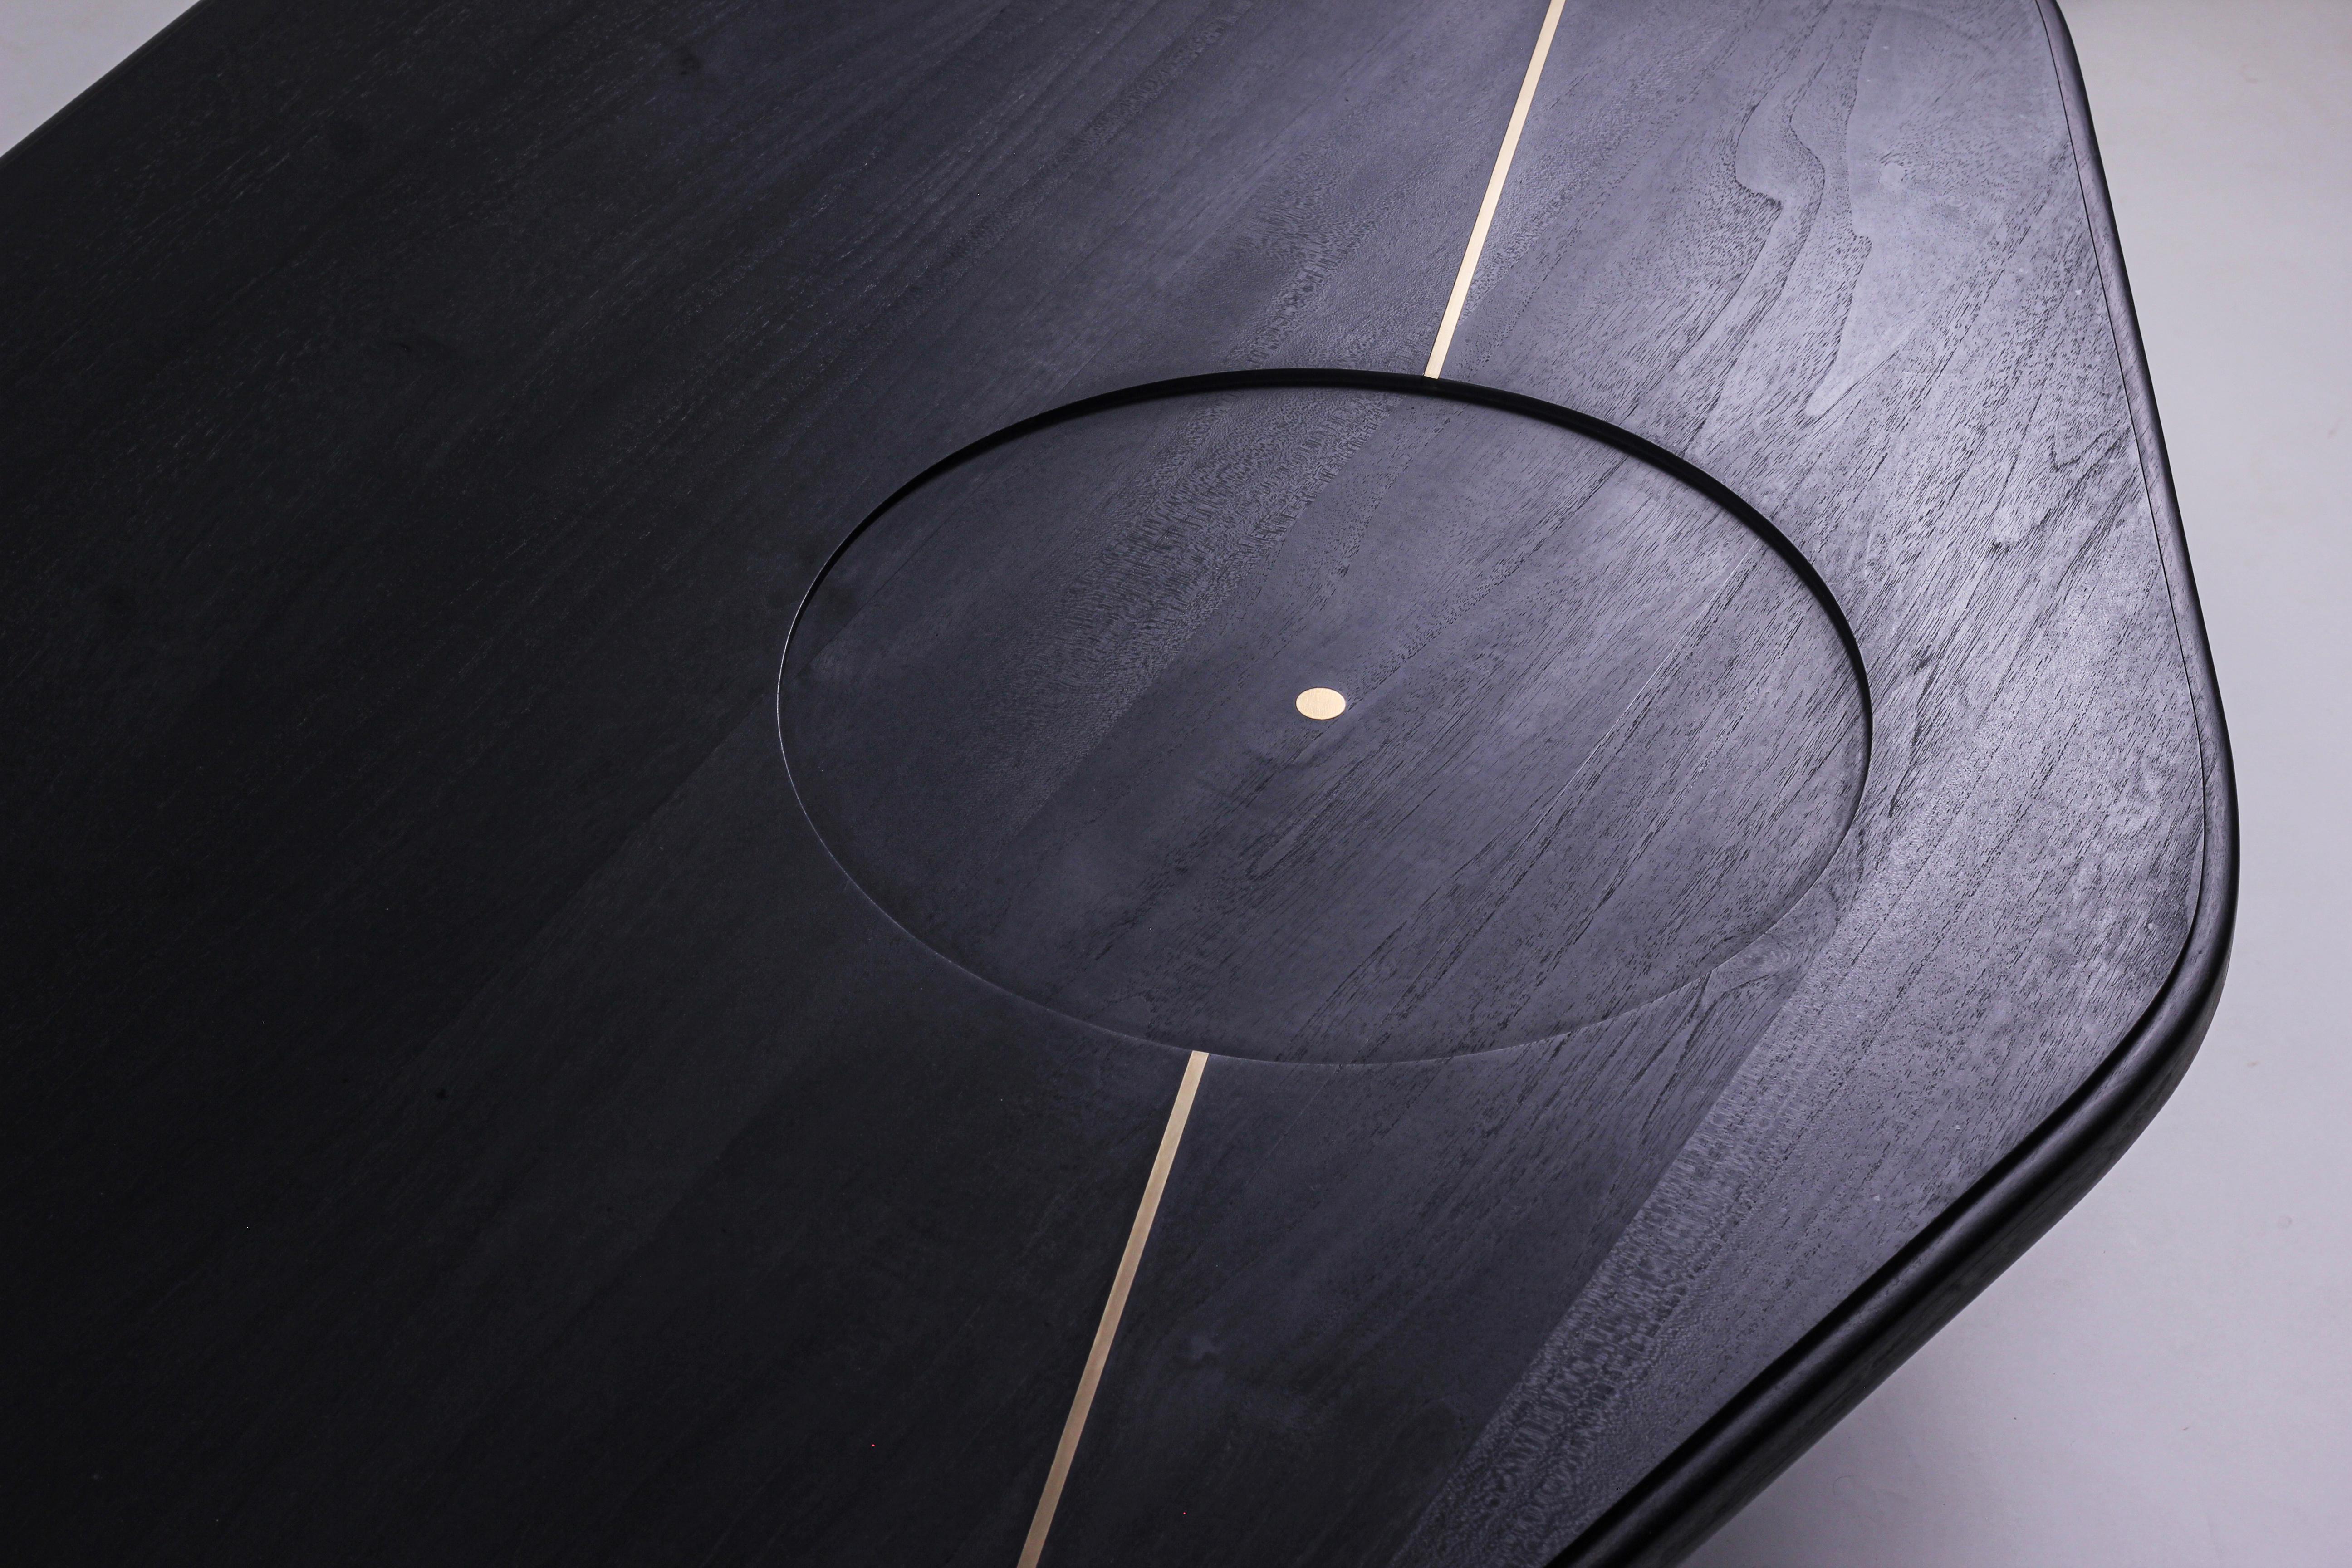 La table basse Ishi est un meuble étonnant qui s'inspire du katana, le sabre japonais. La forme organique de la table et les détails de son plateau rappellent la lame du katana, tandis que sa construction en bois de chêne massif lui confère une